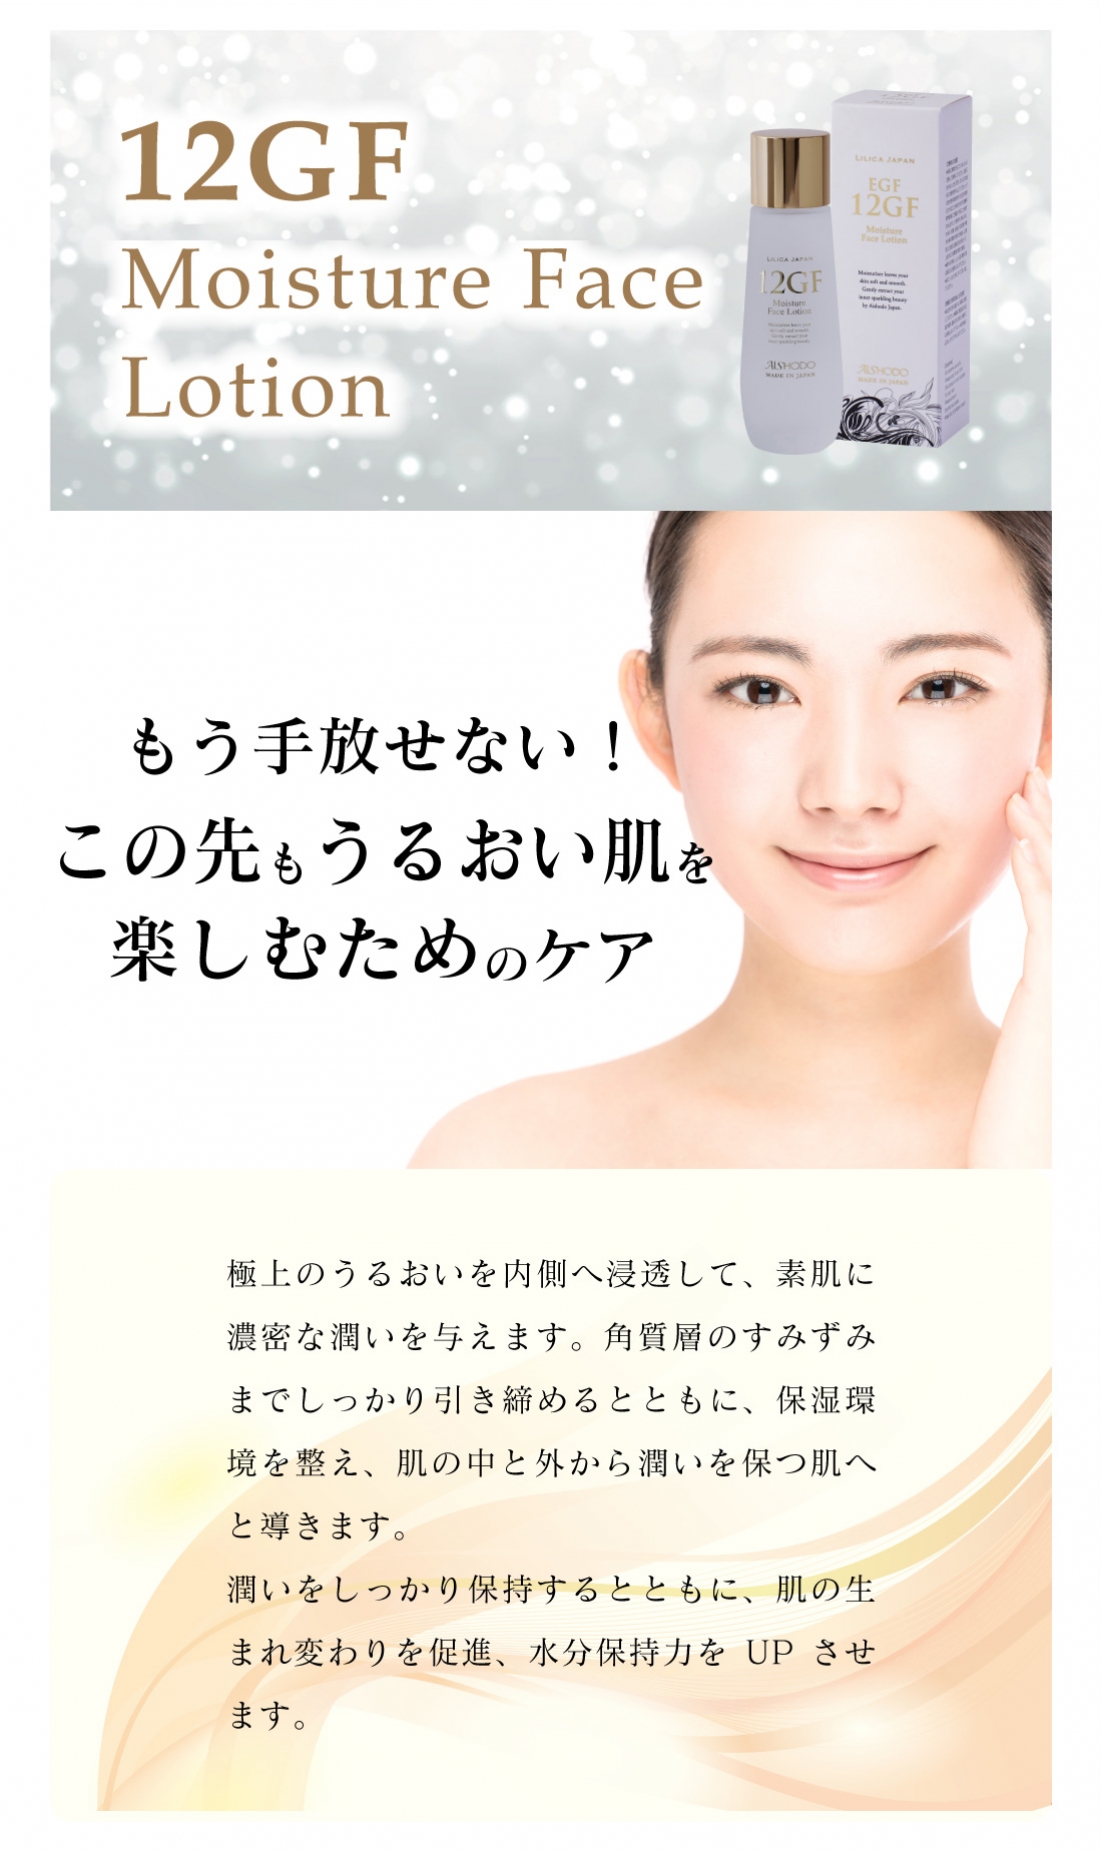 12GF フェイスローション(化粧水)
12GF Moisture Face Lotion